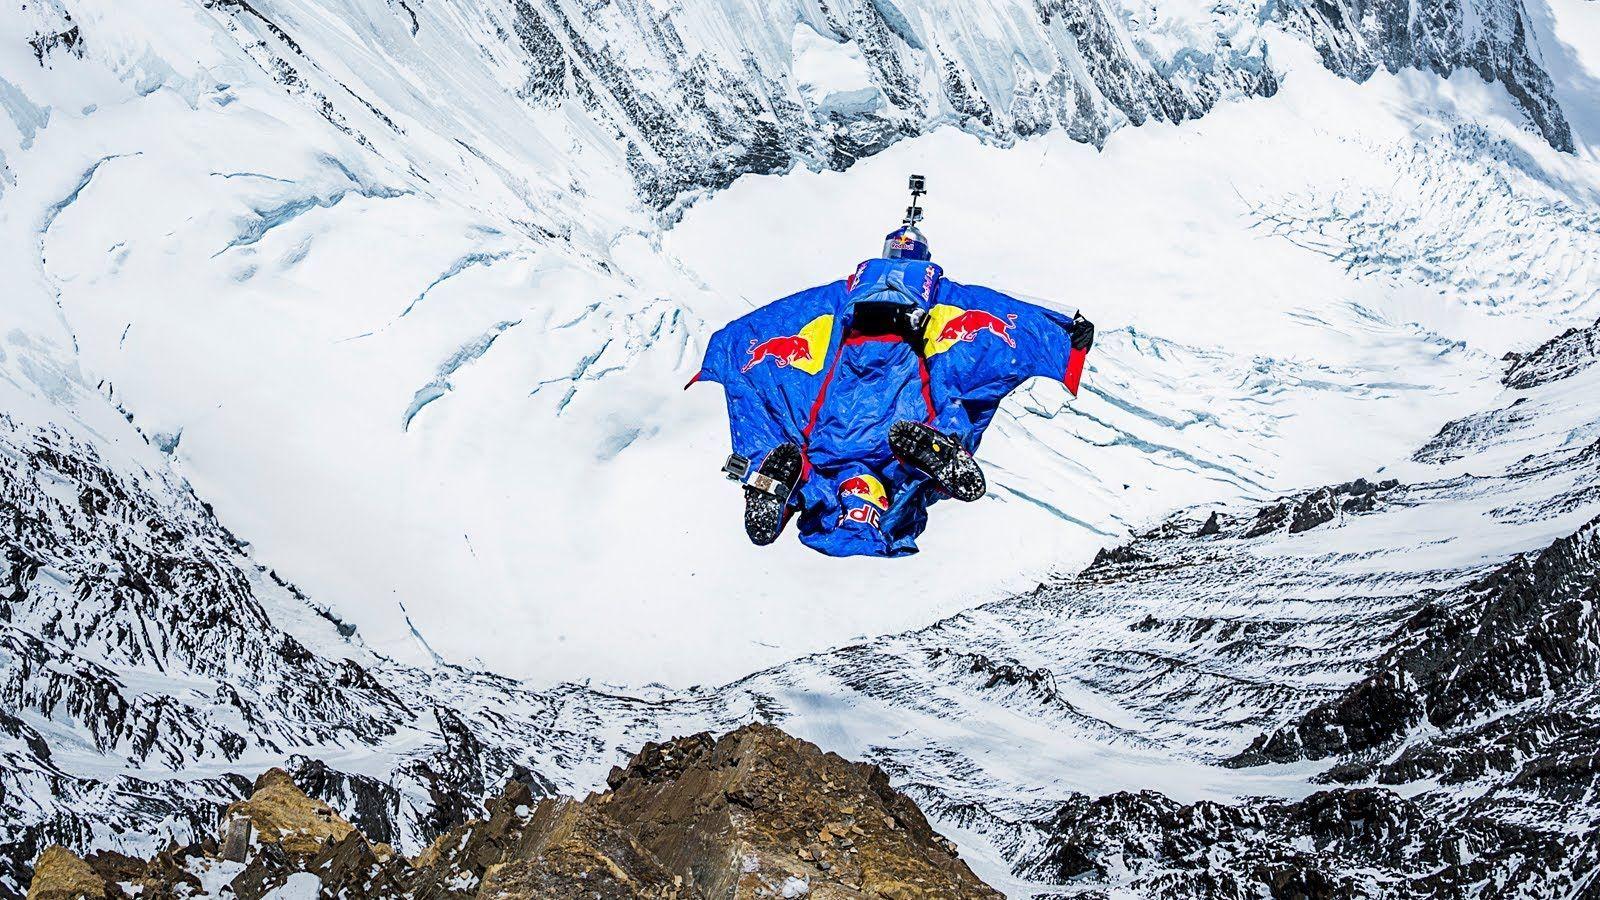 Valery Rozov Jumps Off Mount Everest in Highest BASE Jump Ever